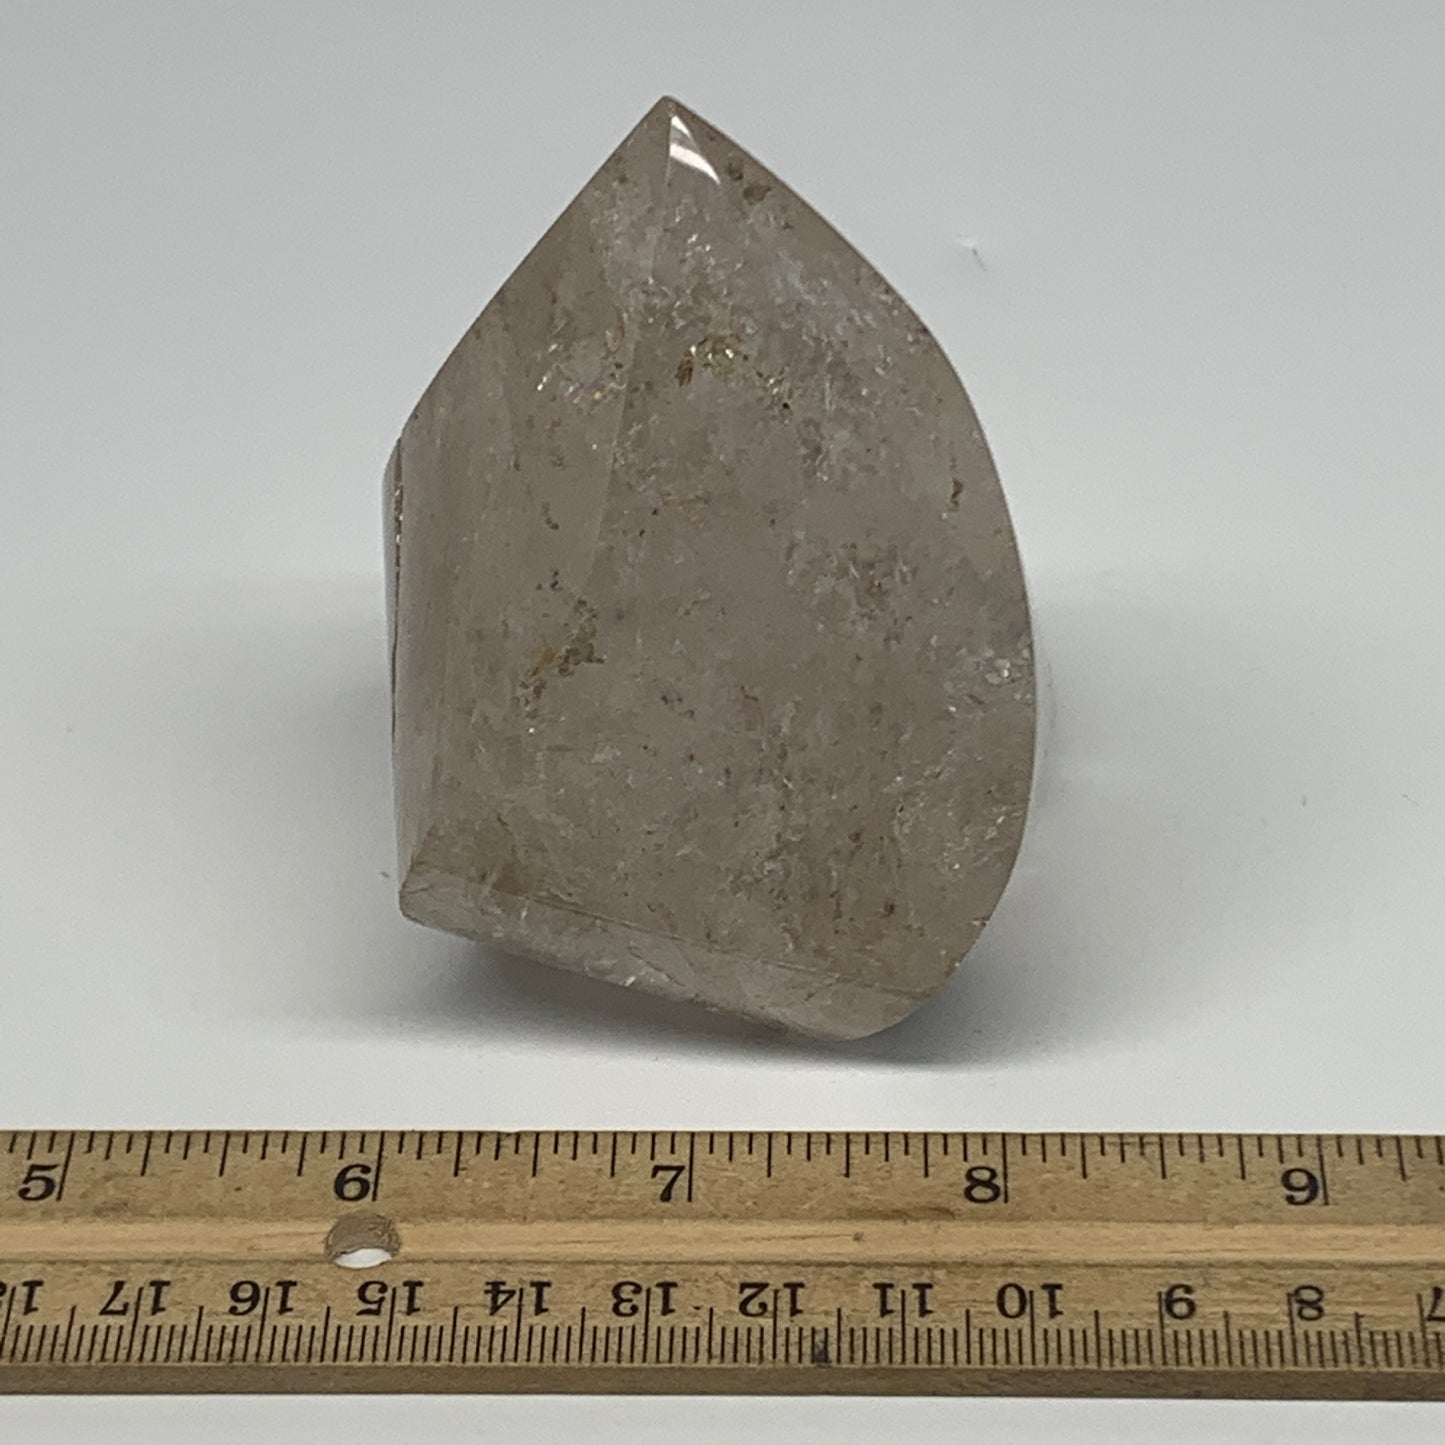 337.8g, 3.2"x2.2"x2.1", Natural Smoky Quartz Flame Polished Crystal @Brazil, B19